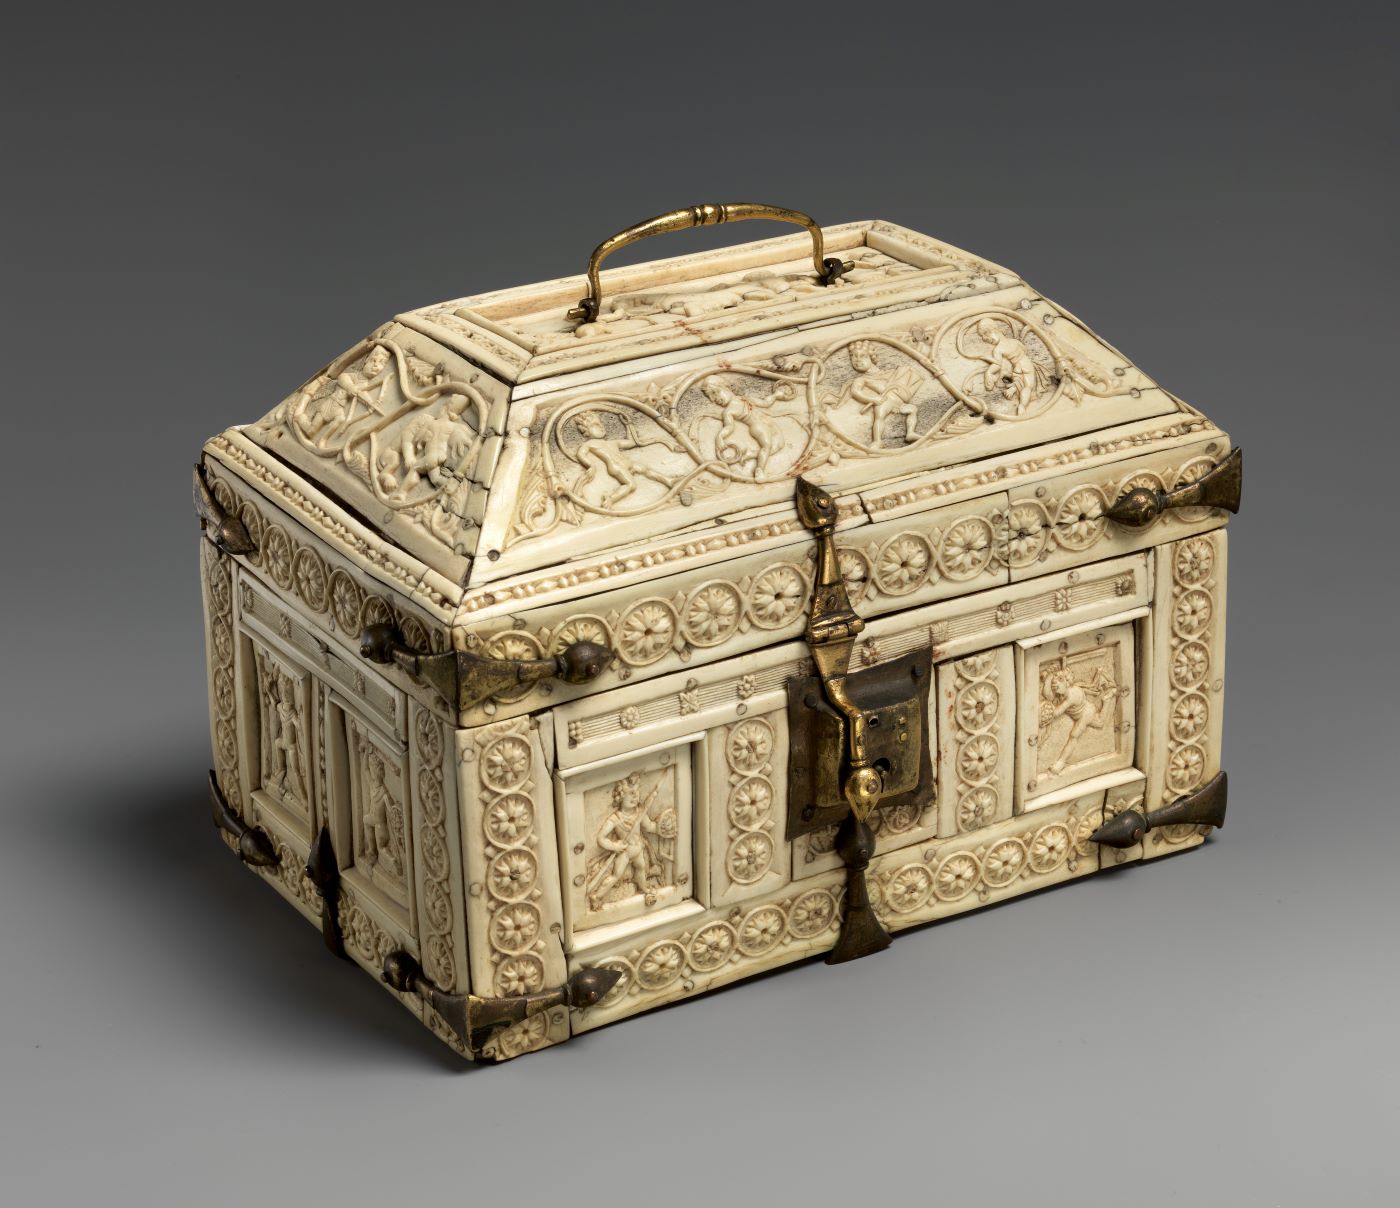 Χρυσελεφάντινο κουτί με την θεά Ίσιδα και τον θεό Διόνυσο. Κατασκευασμένο στην Κωνσταντινούπολη (11ος αιώνας)